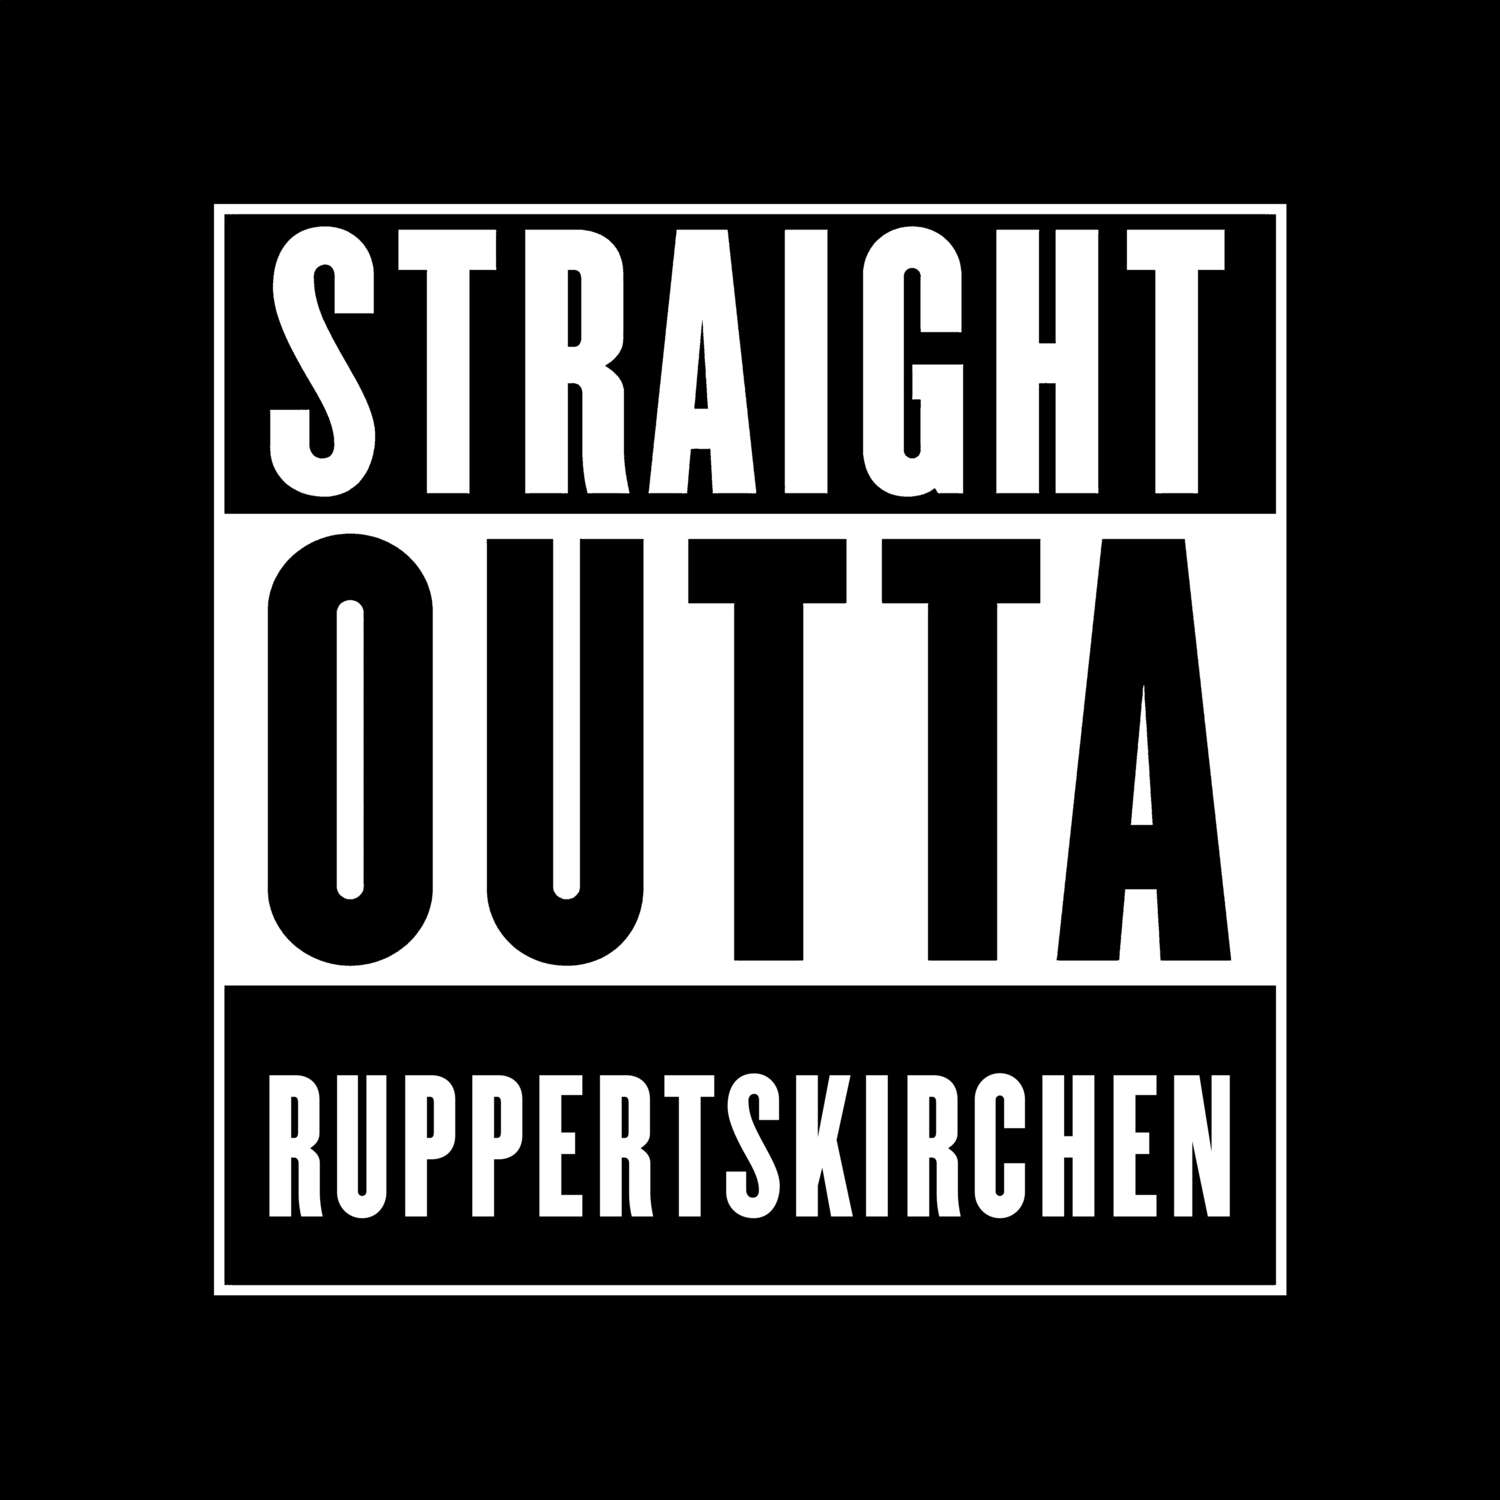 Ruppertskirchen T-Shirt »Straight Outta«